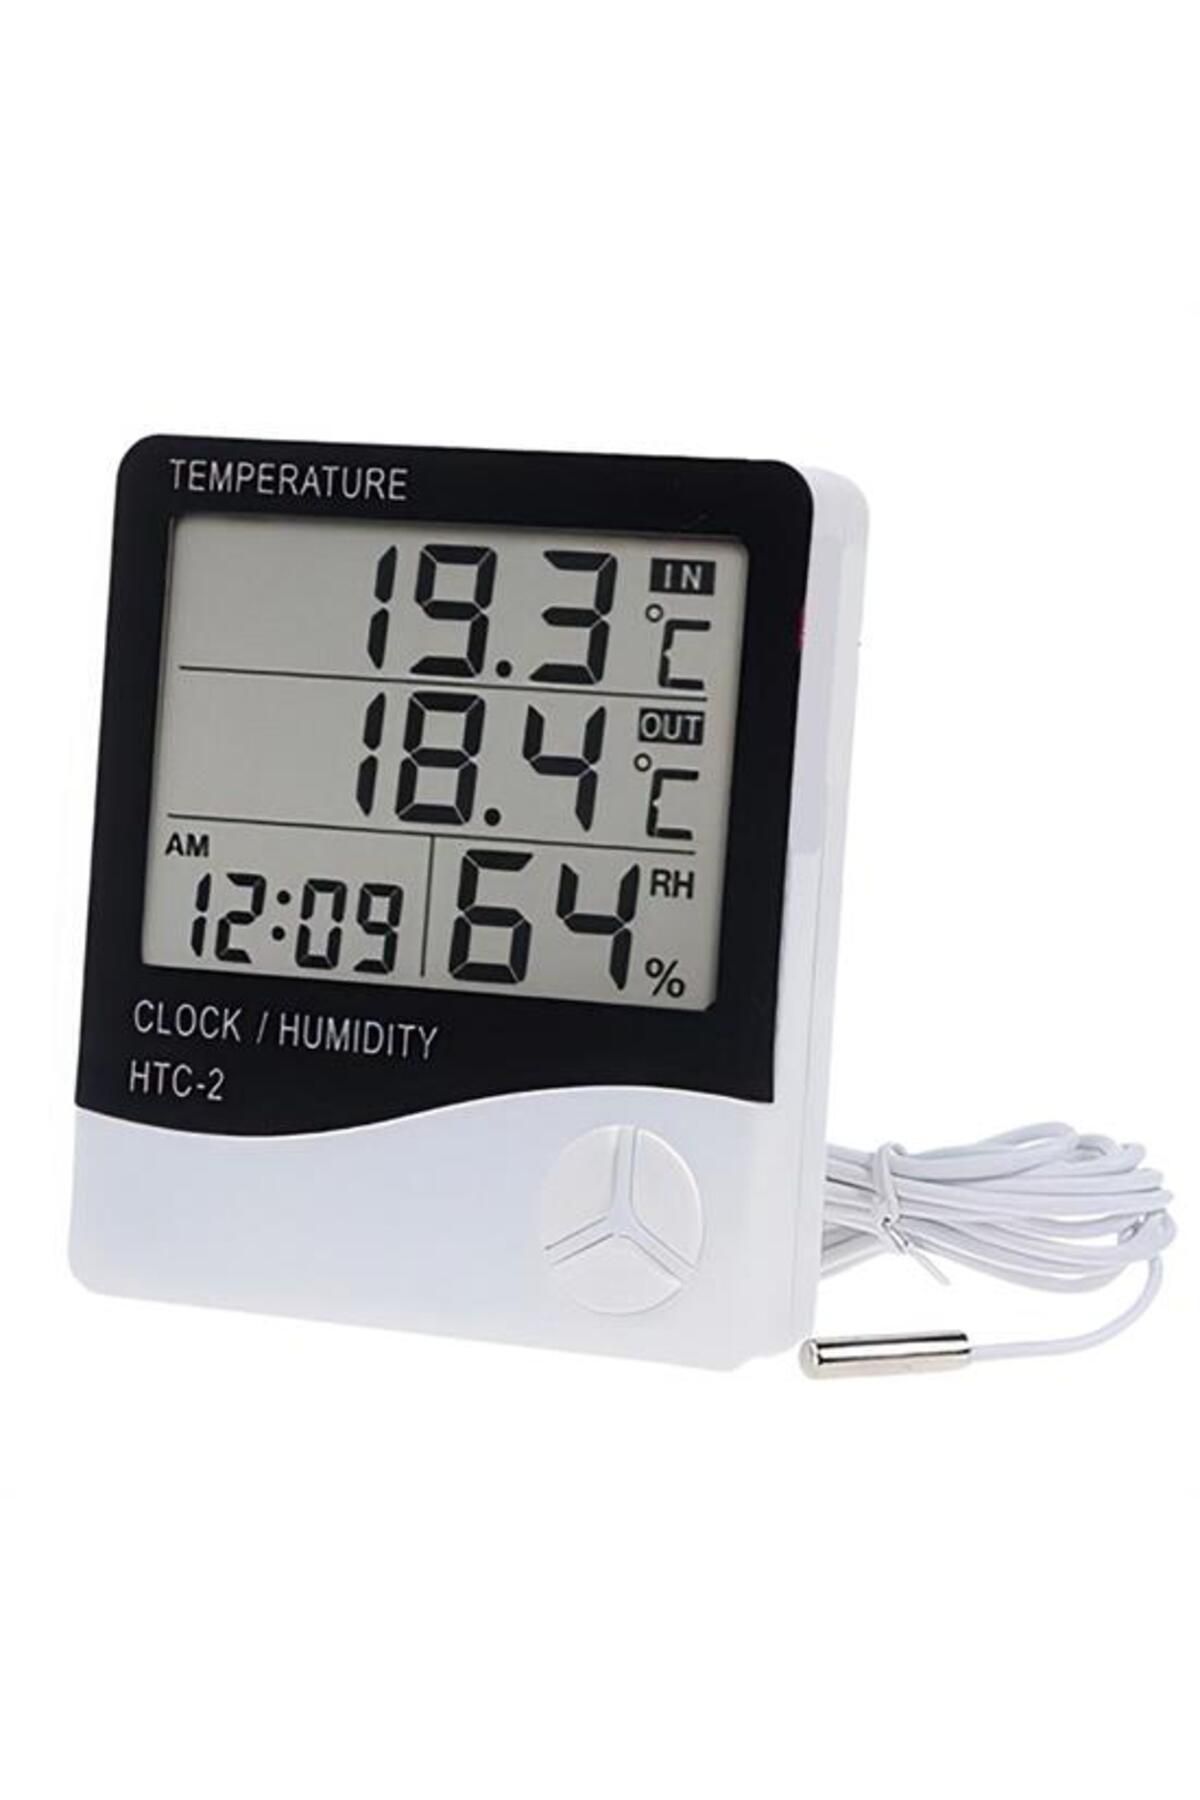 MirtaButik İç Ve Dış Ortam Sıcaklığını Ölçebilen Lcd Ekran Saat Göstergeli Alarmlı Nem Ölçer Termometre 4434